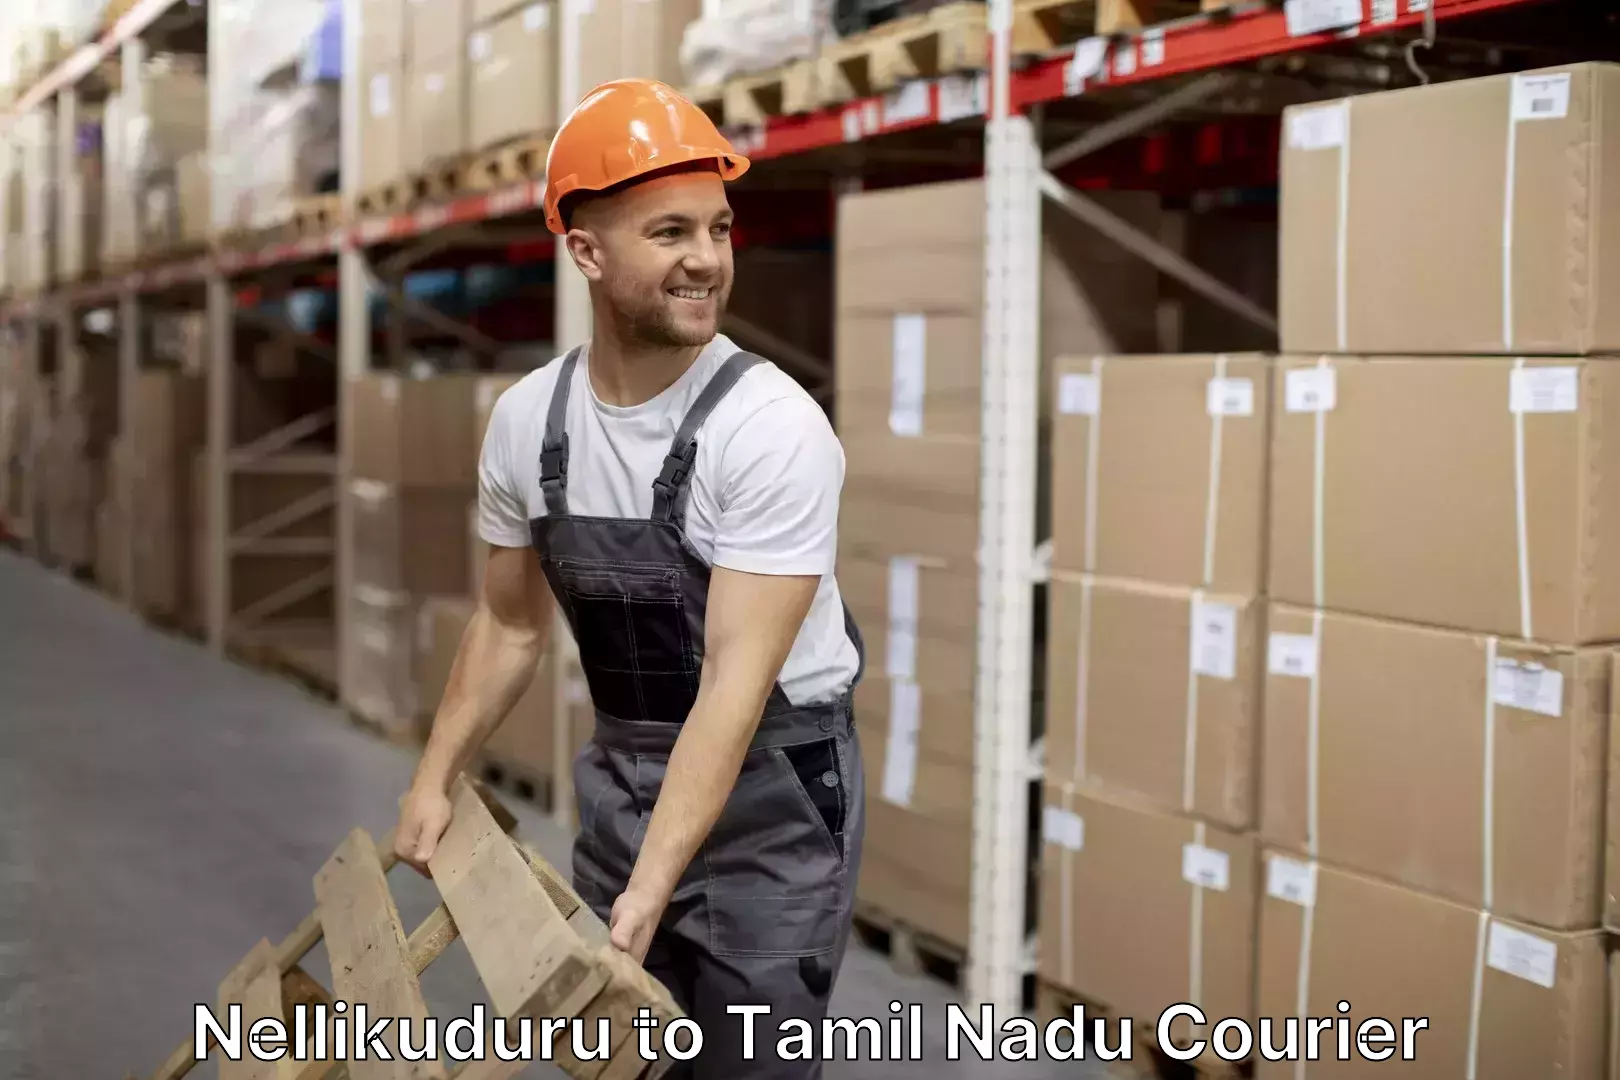 Furniture relocation services in Nellikuduru to Tamil Nadu